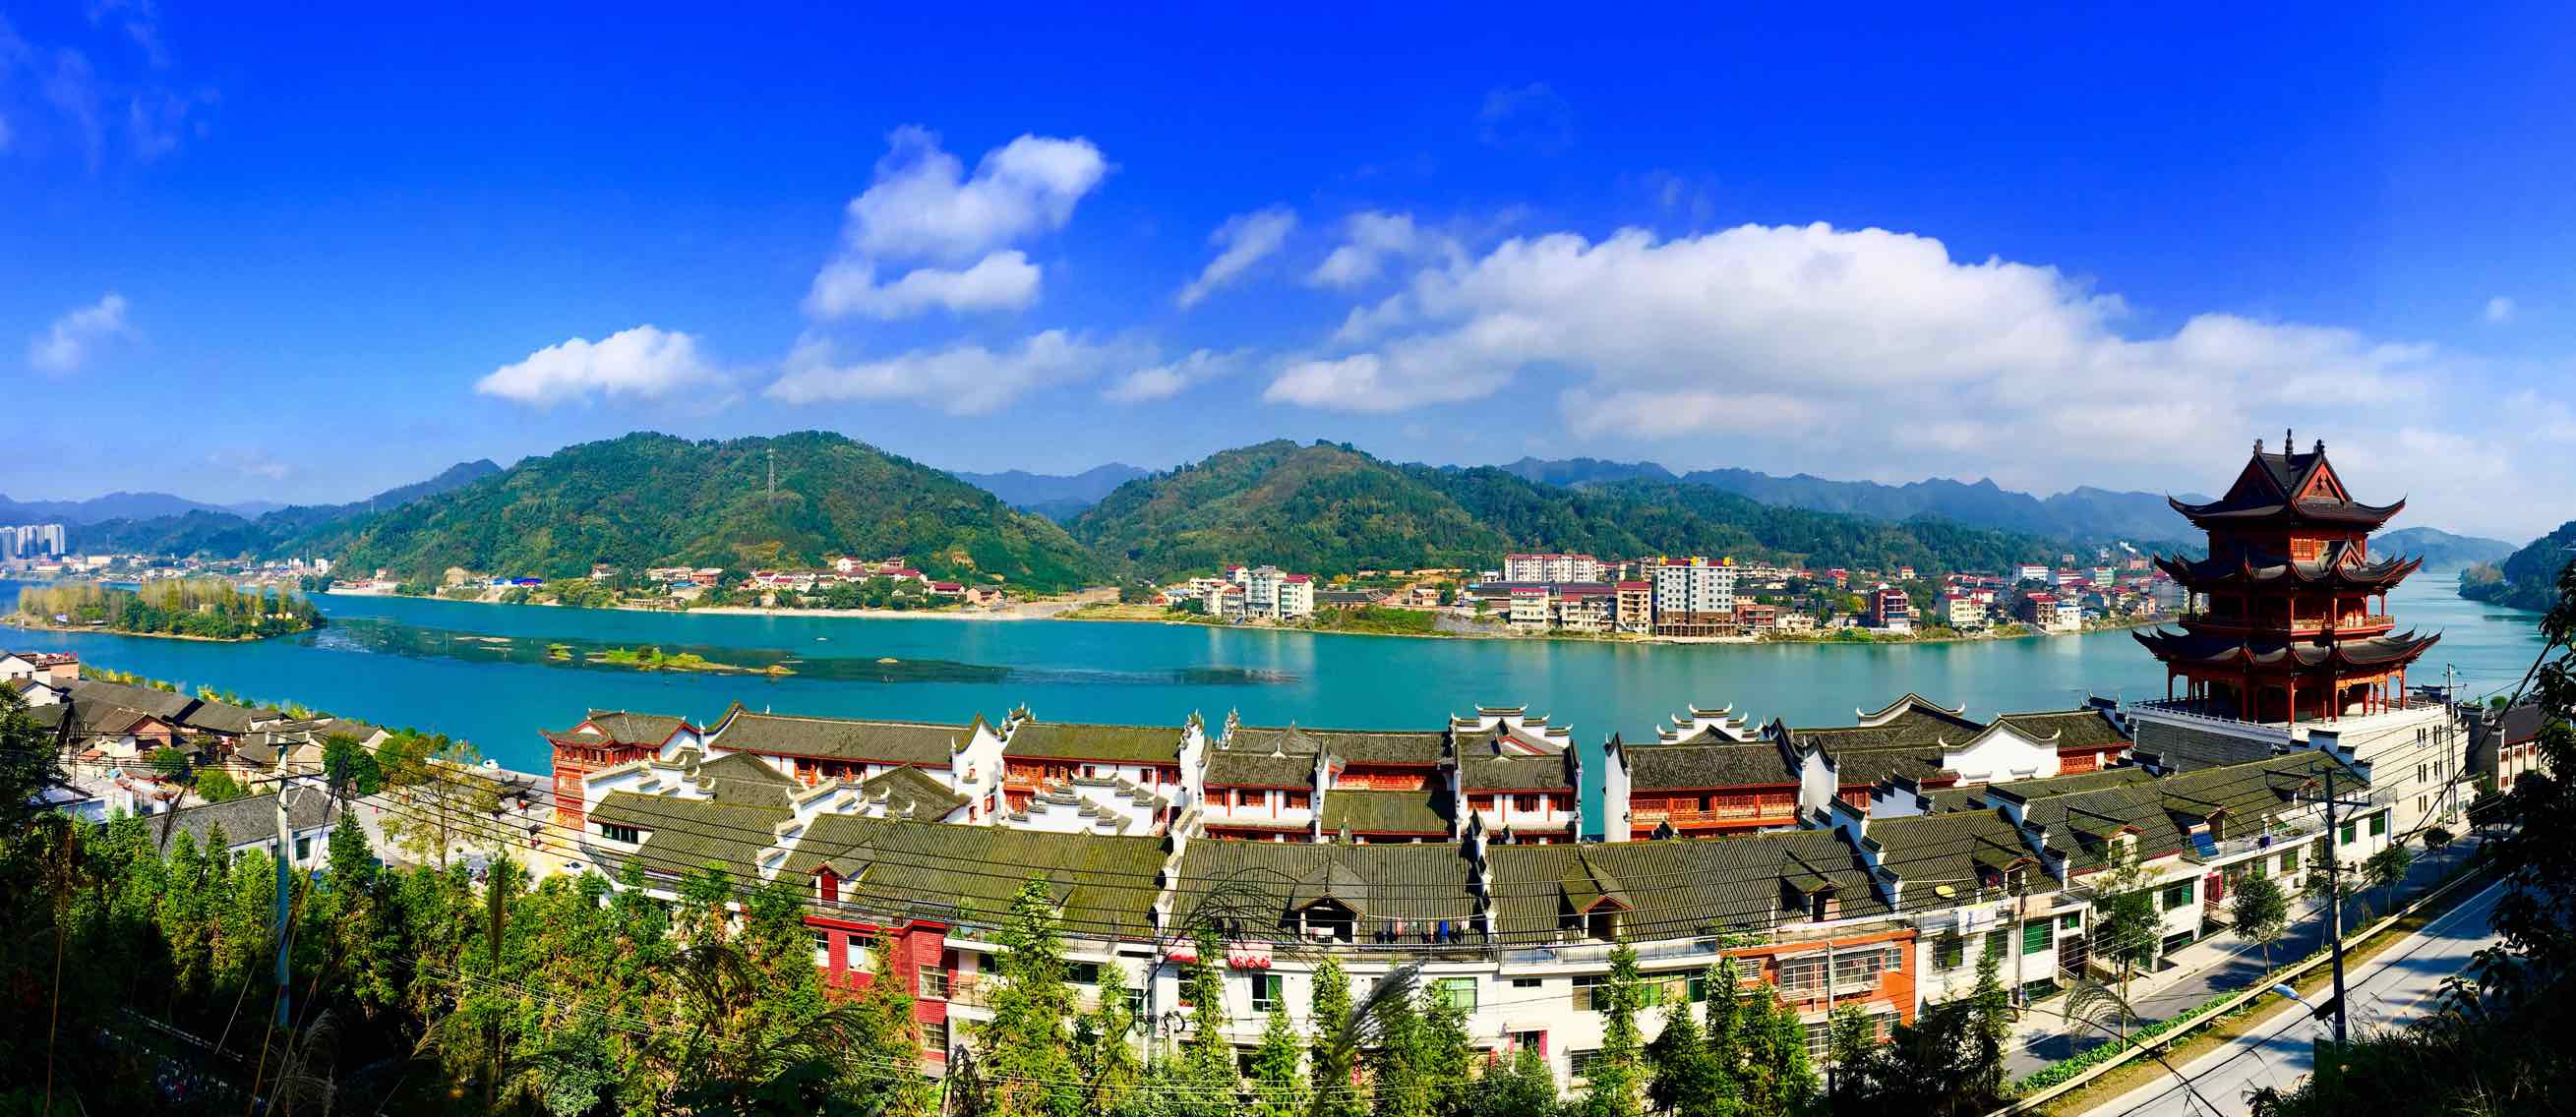 安化县风景图片